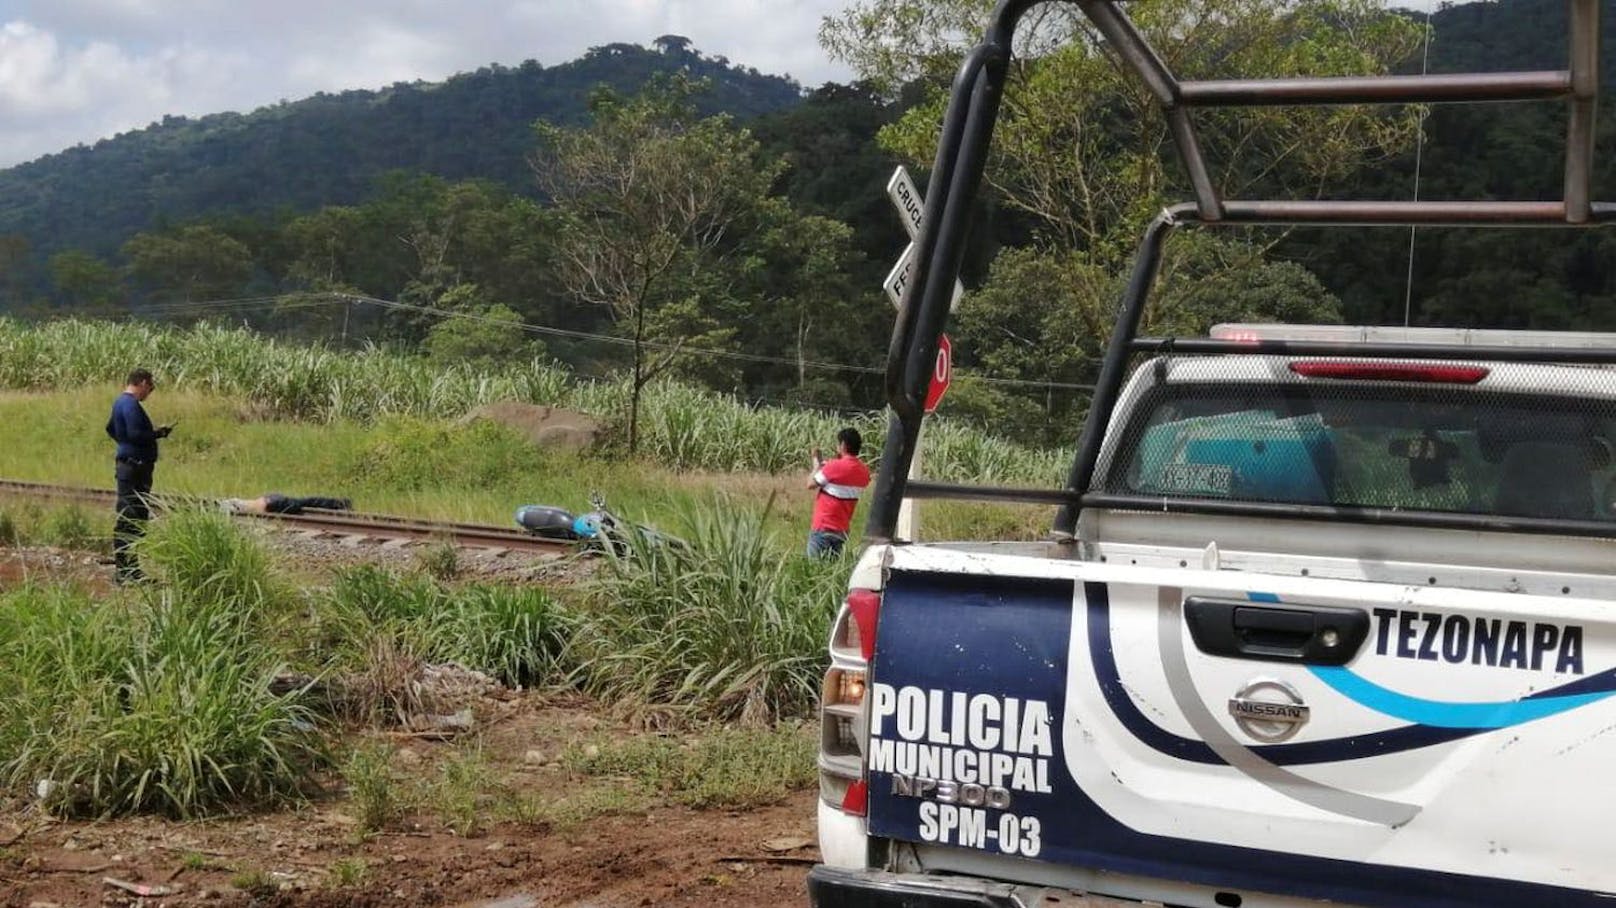 Die enthauptete Leiche des Journalisten sowie sein Motorrad wurden nach Angaben der Zeitung "El Mundo" am Mittwoch auf Eisenbahngleisen in Tezonapa gefunden.